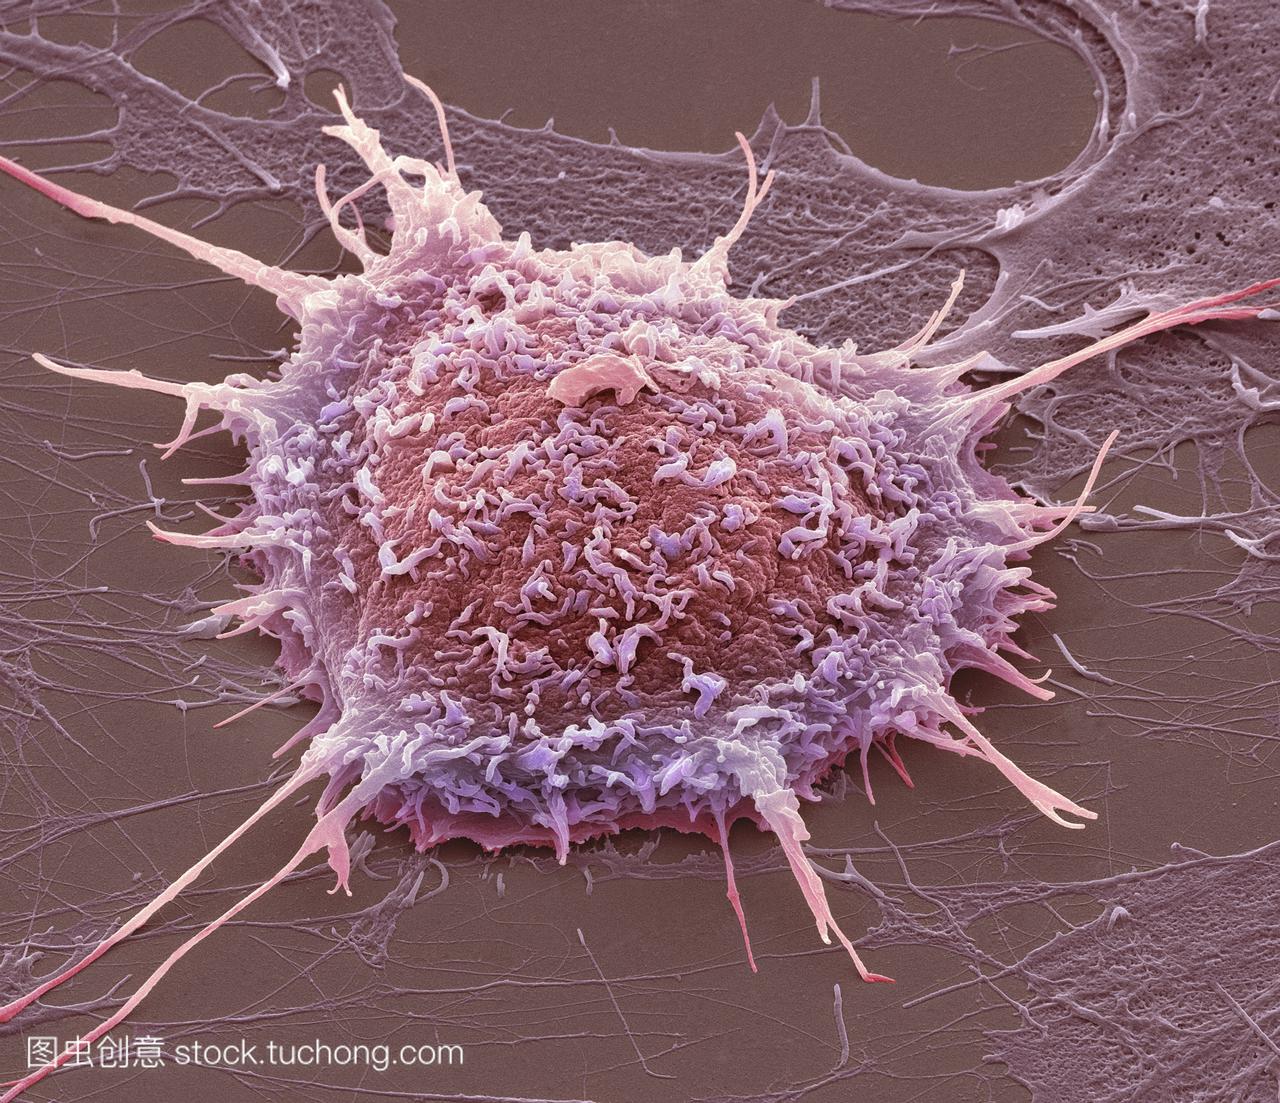 宫颈癌细胞,彩色扫描电镜sem。培养的癌细胞